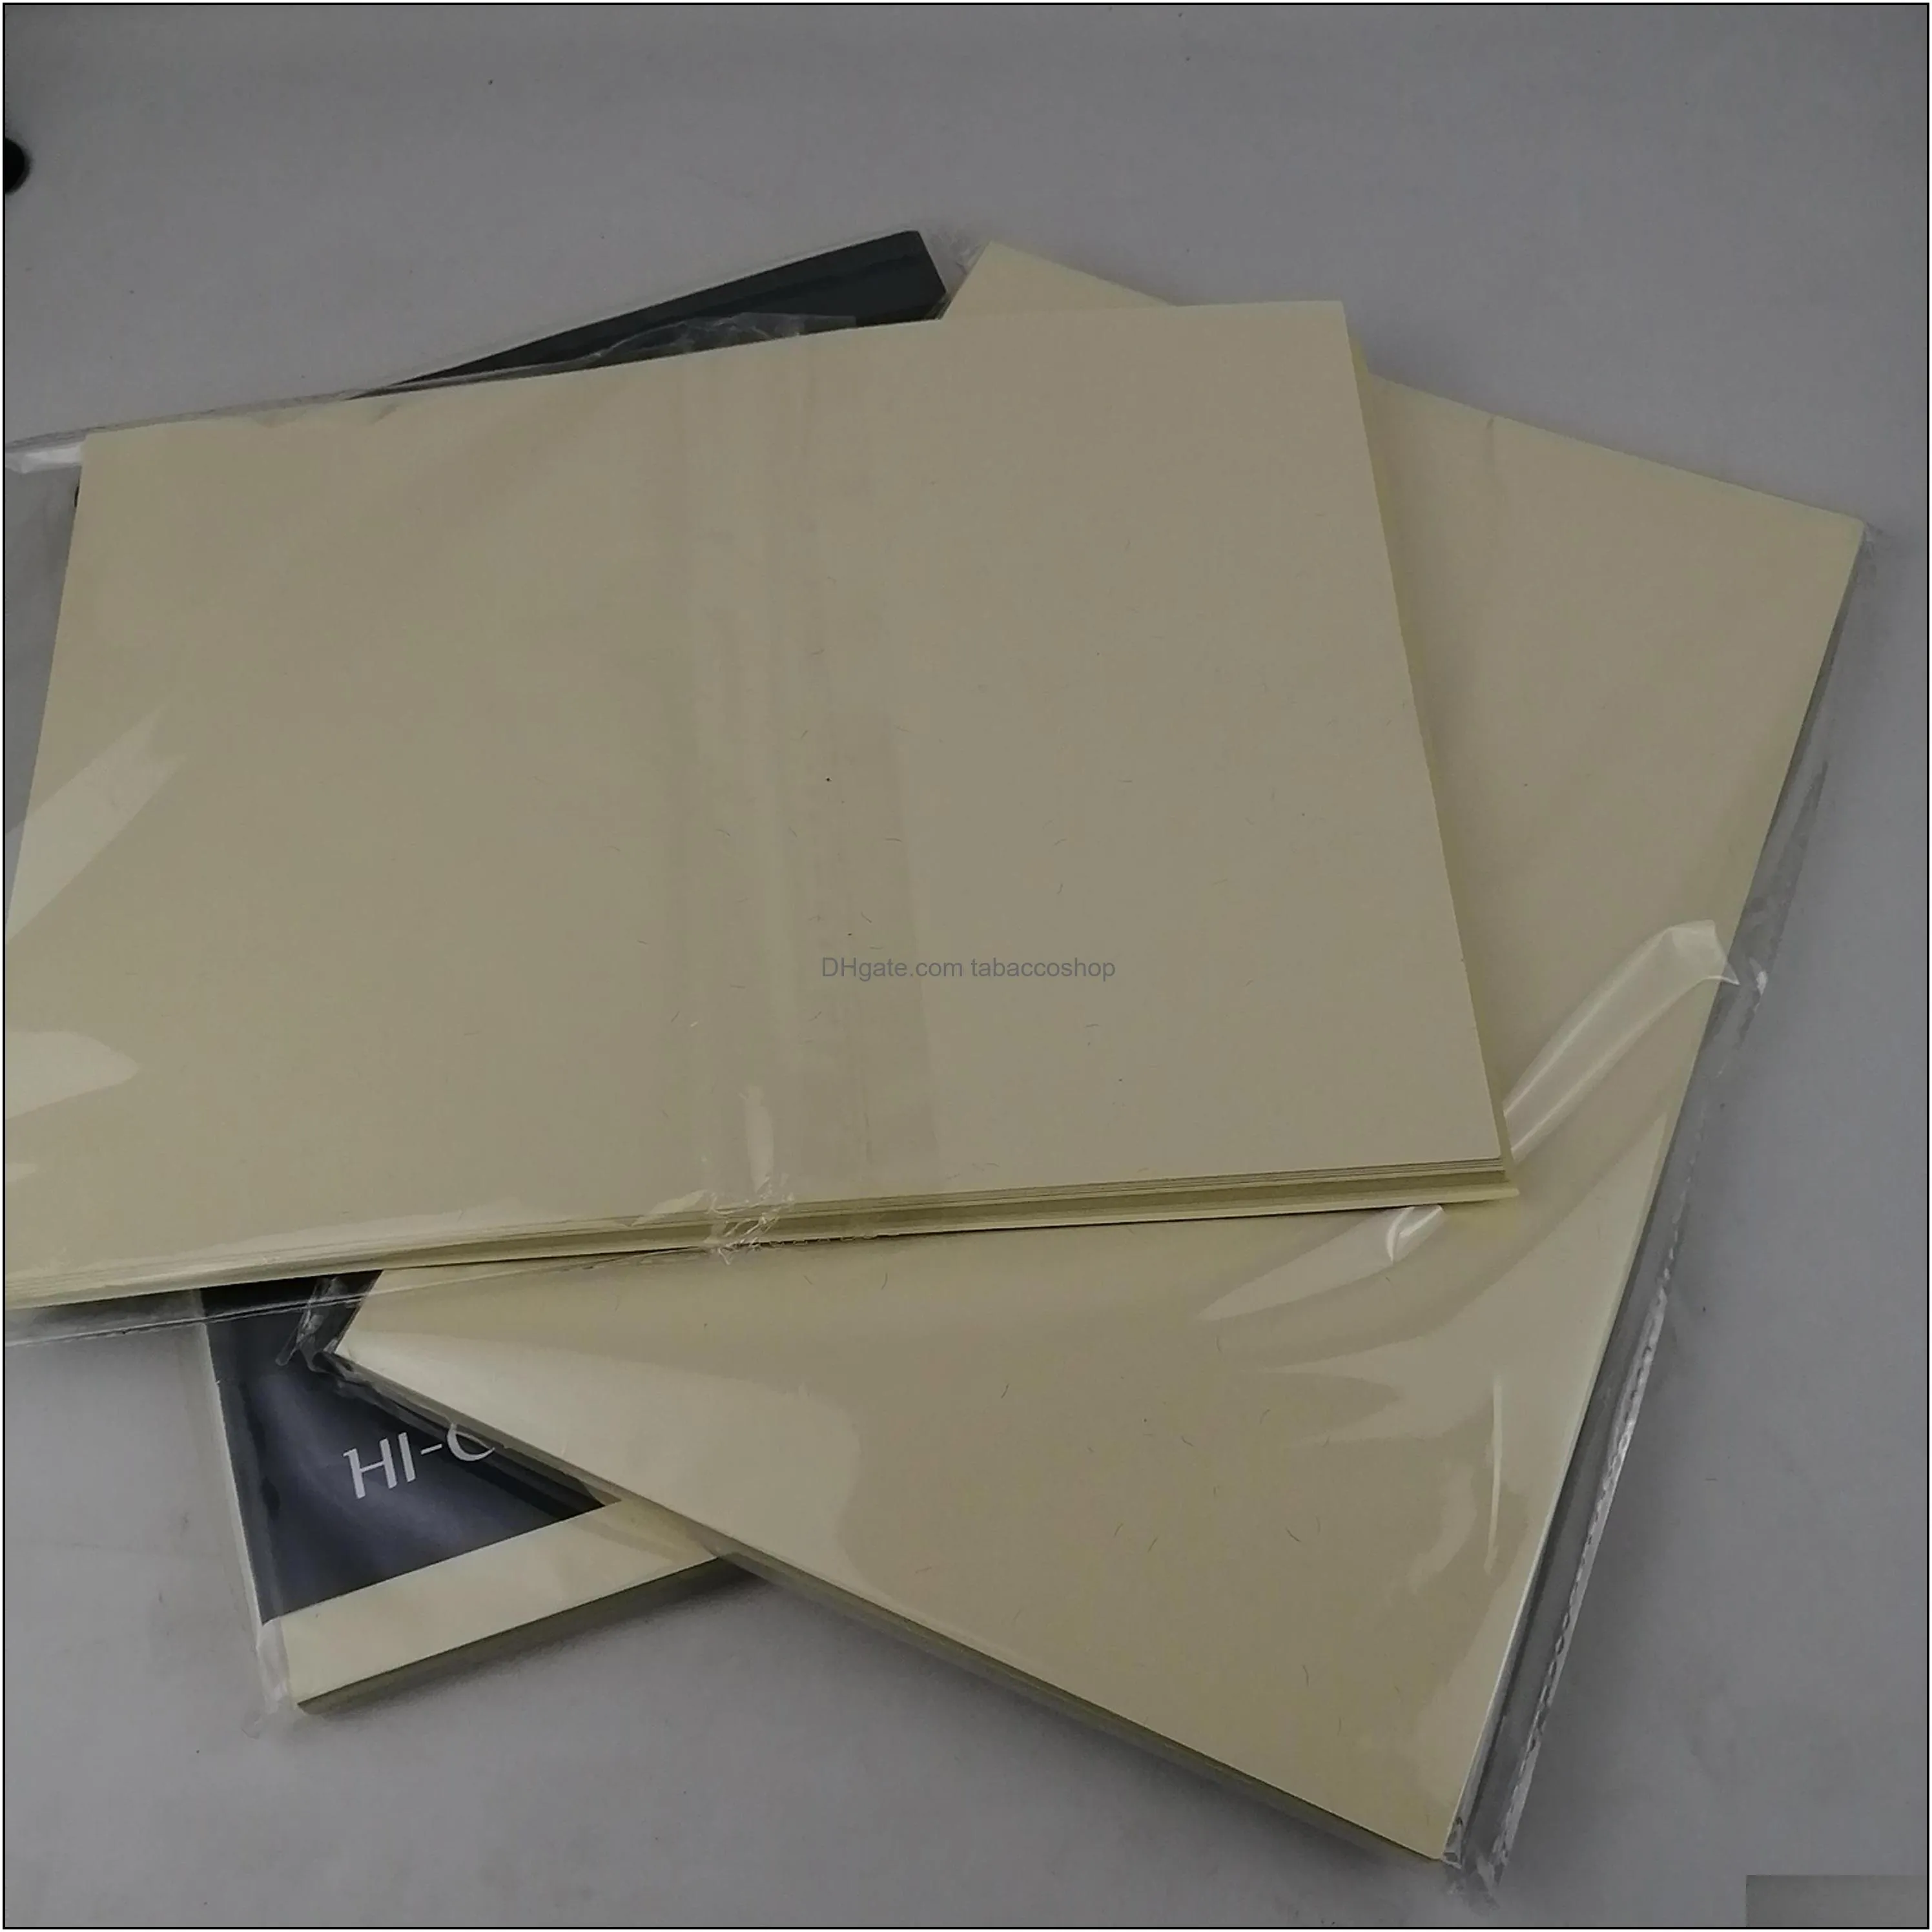 200 sheets bond paper 75% cotton 25% linen pass counterfeit pen test paper white color A4 paper